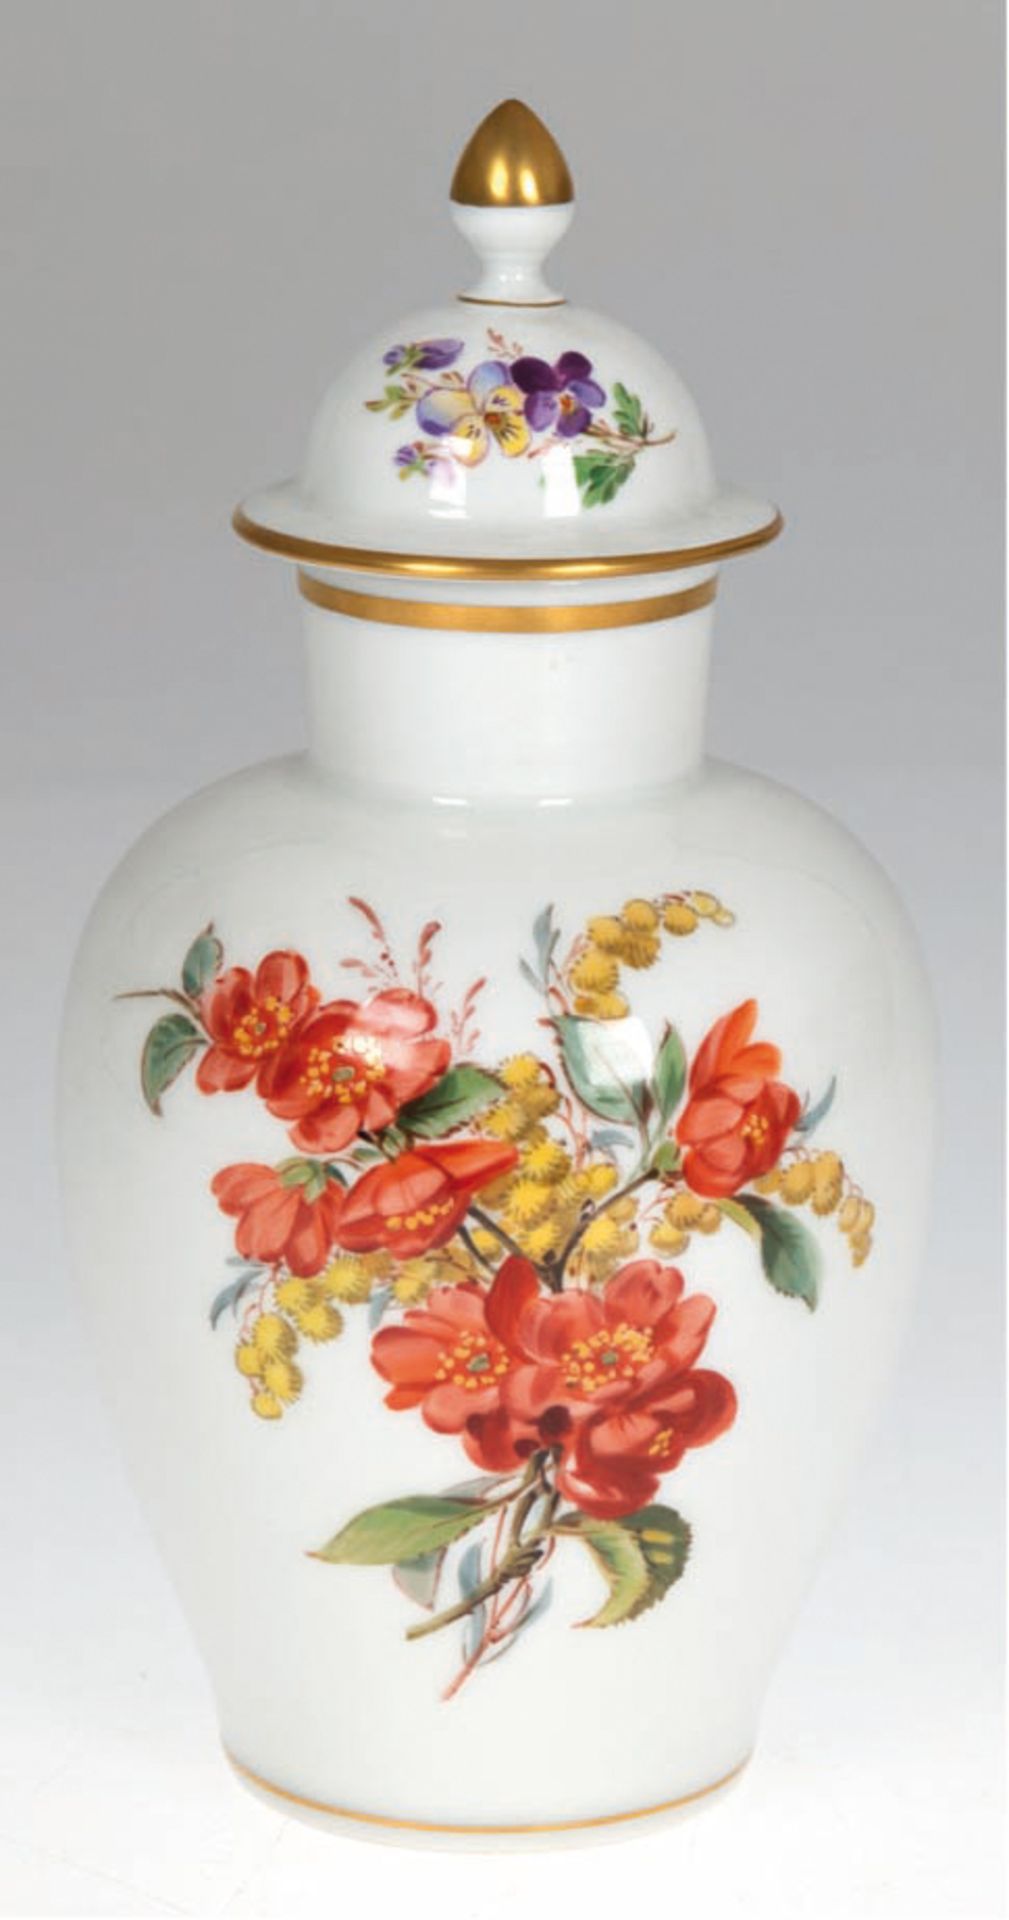 Meissen-Deckelvase, Bunte Blume 2 mit Goldrändern, gebauchter Korpus, 1. Wahl, H. 23 cm